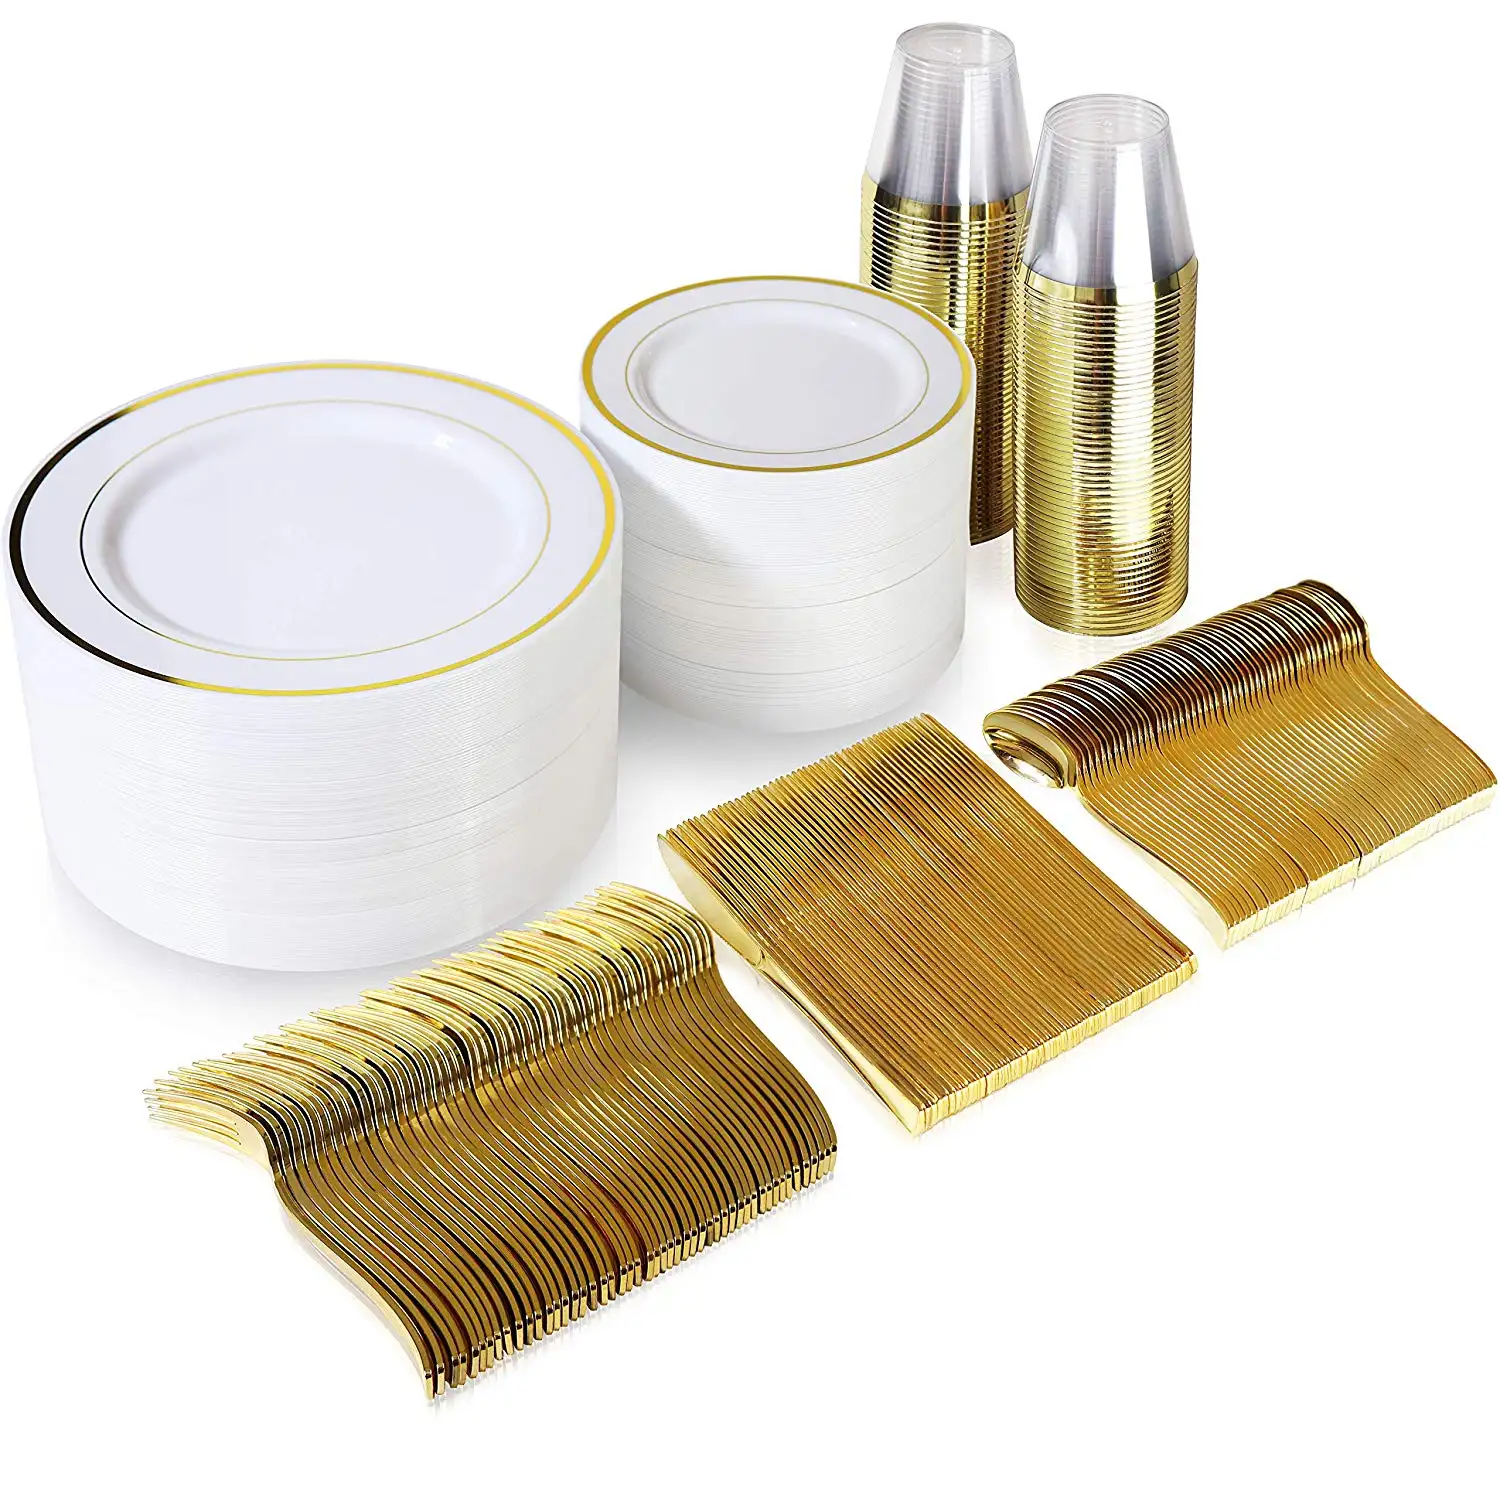 Placas de plástico douradas, conjunto de louças descartáveis, 25 unidades de placas de jantar, copos, garfos, facas, colheres